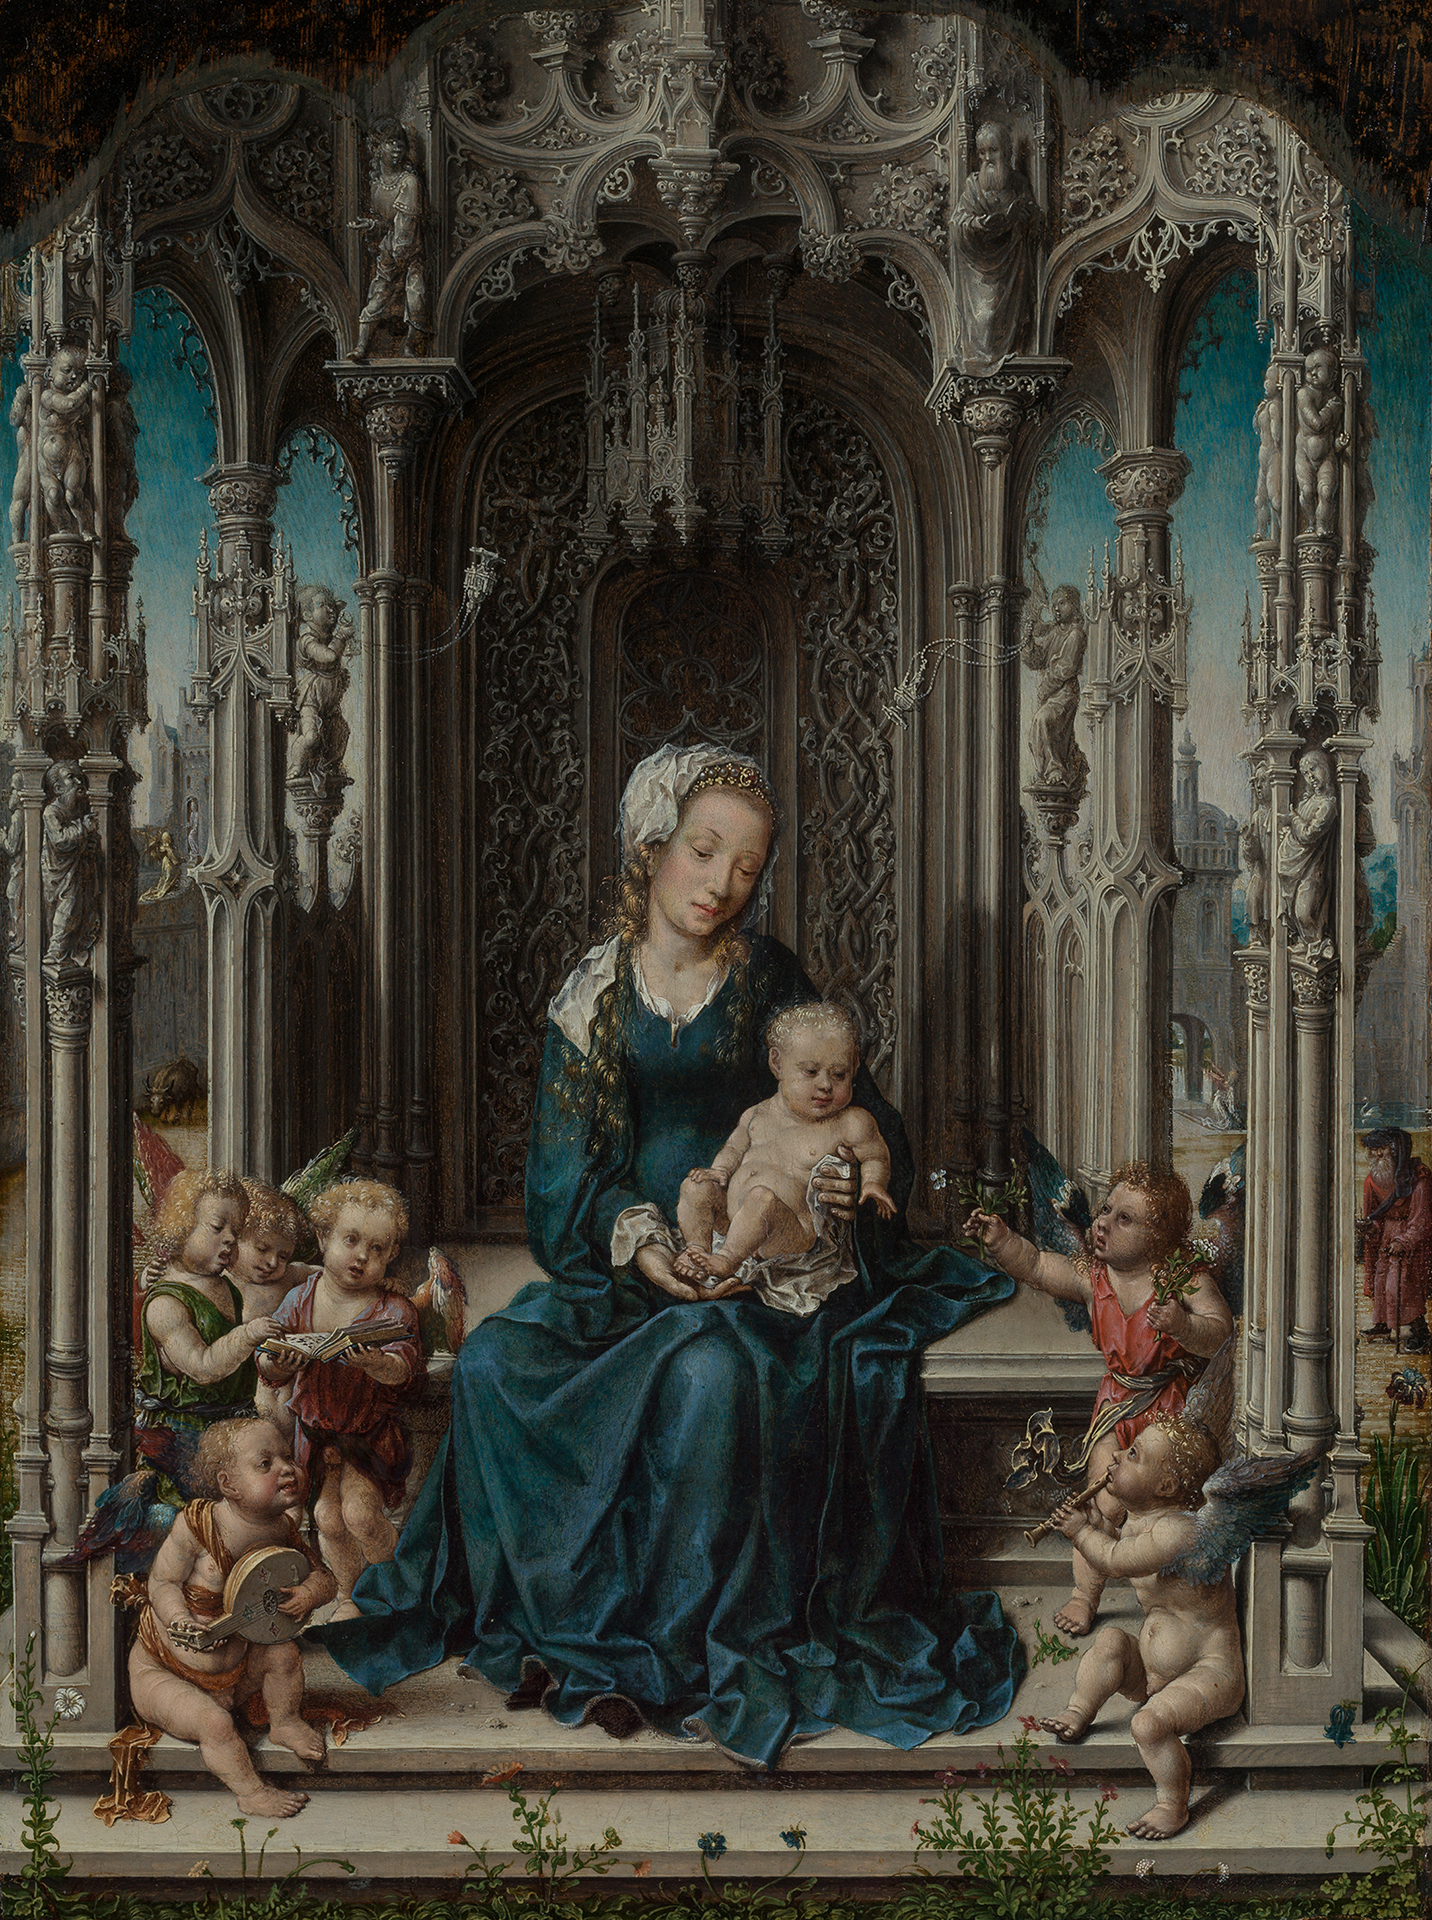 Abbildung eines Gemäldes, auf dem die thronende Jungfrau mit dem Kind und musizierenden Engeln dargestellt ist. Im Hintergrund sieht man detailliert gestaltete Architektur.